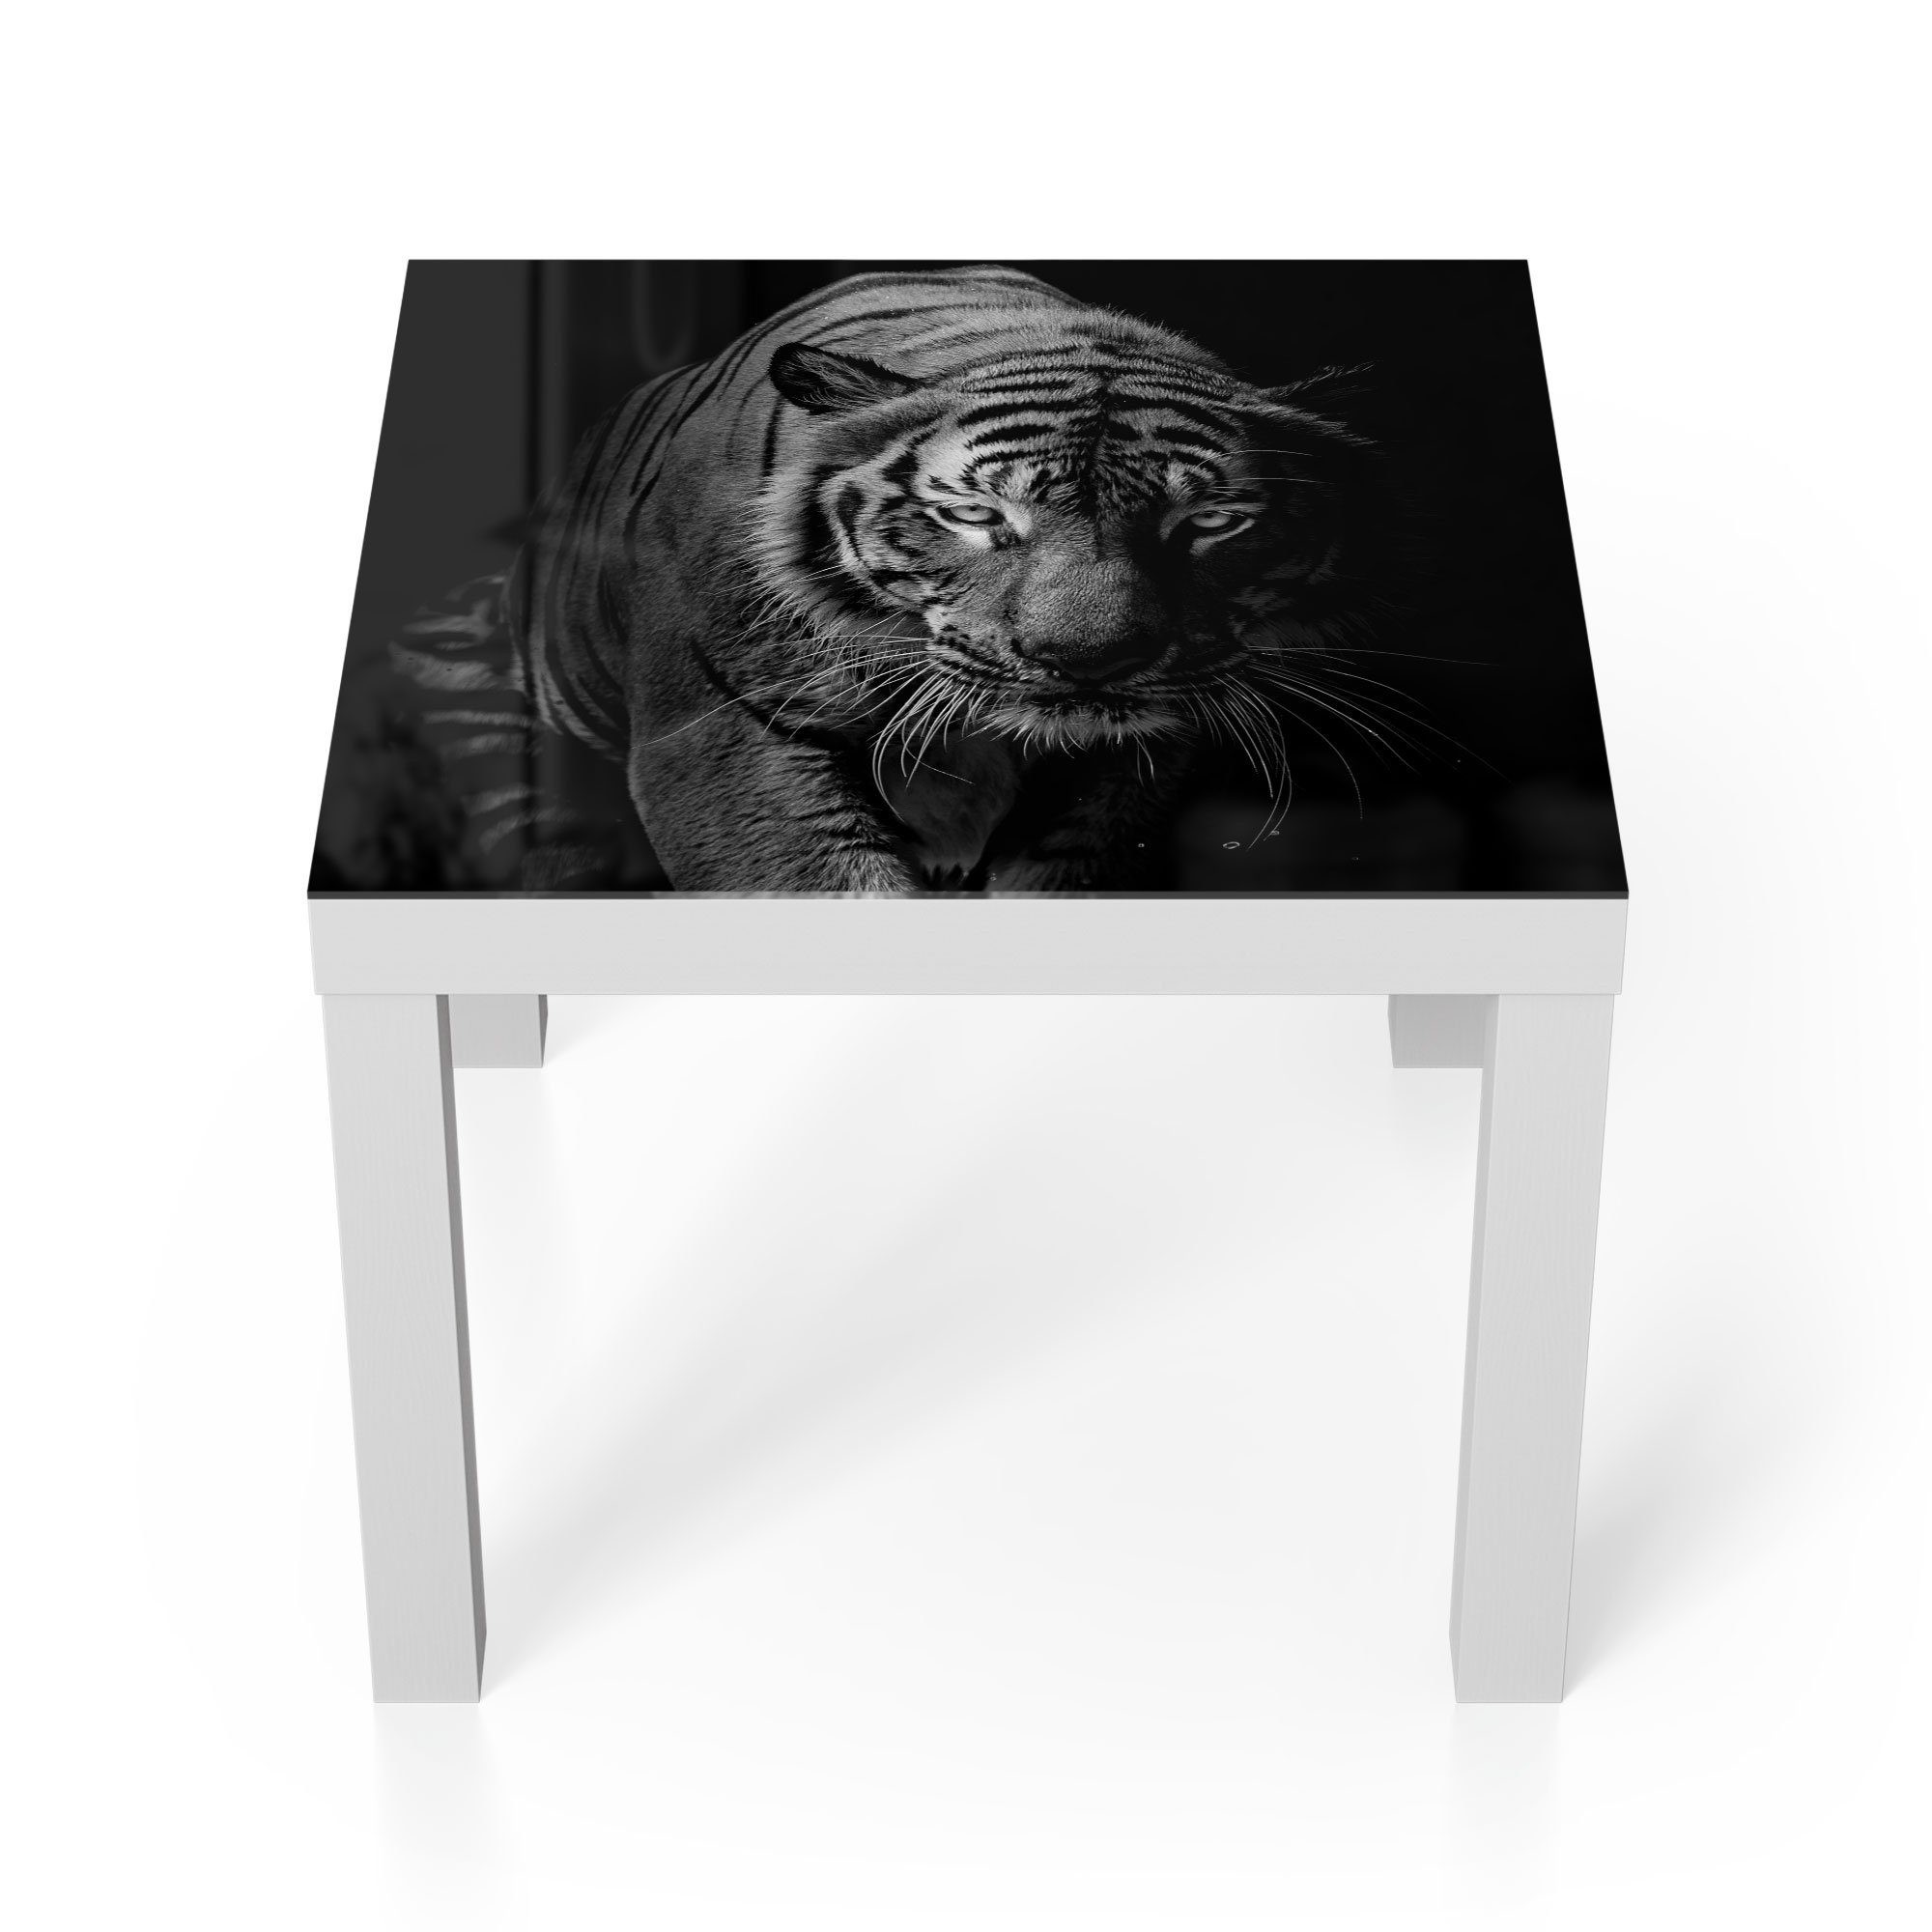 DEQORI Couchtisch 'Tiger auf der Pirsch', Glas Beistelltisch Glastisch modern Weiß